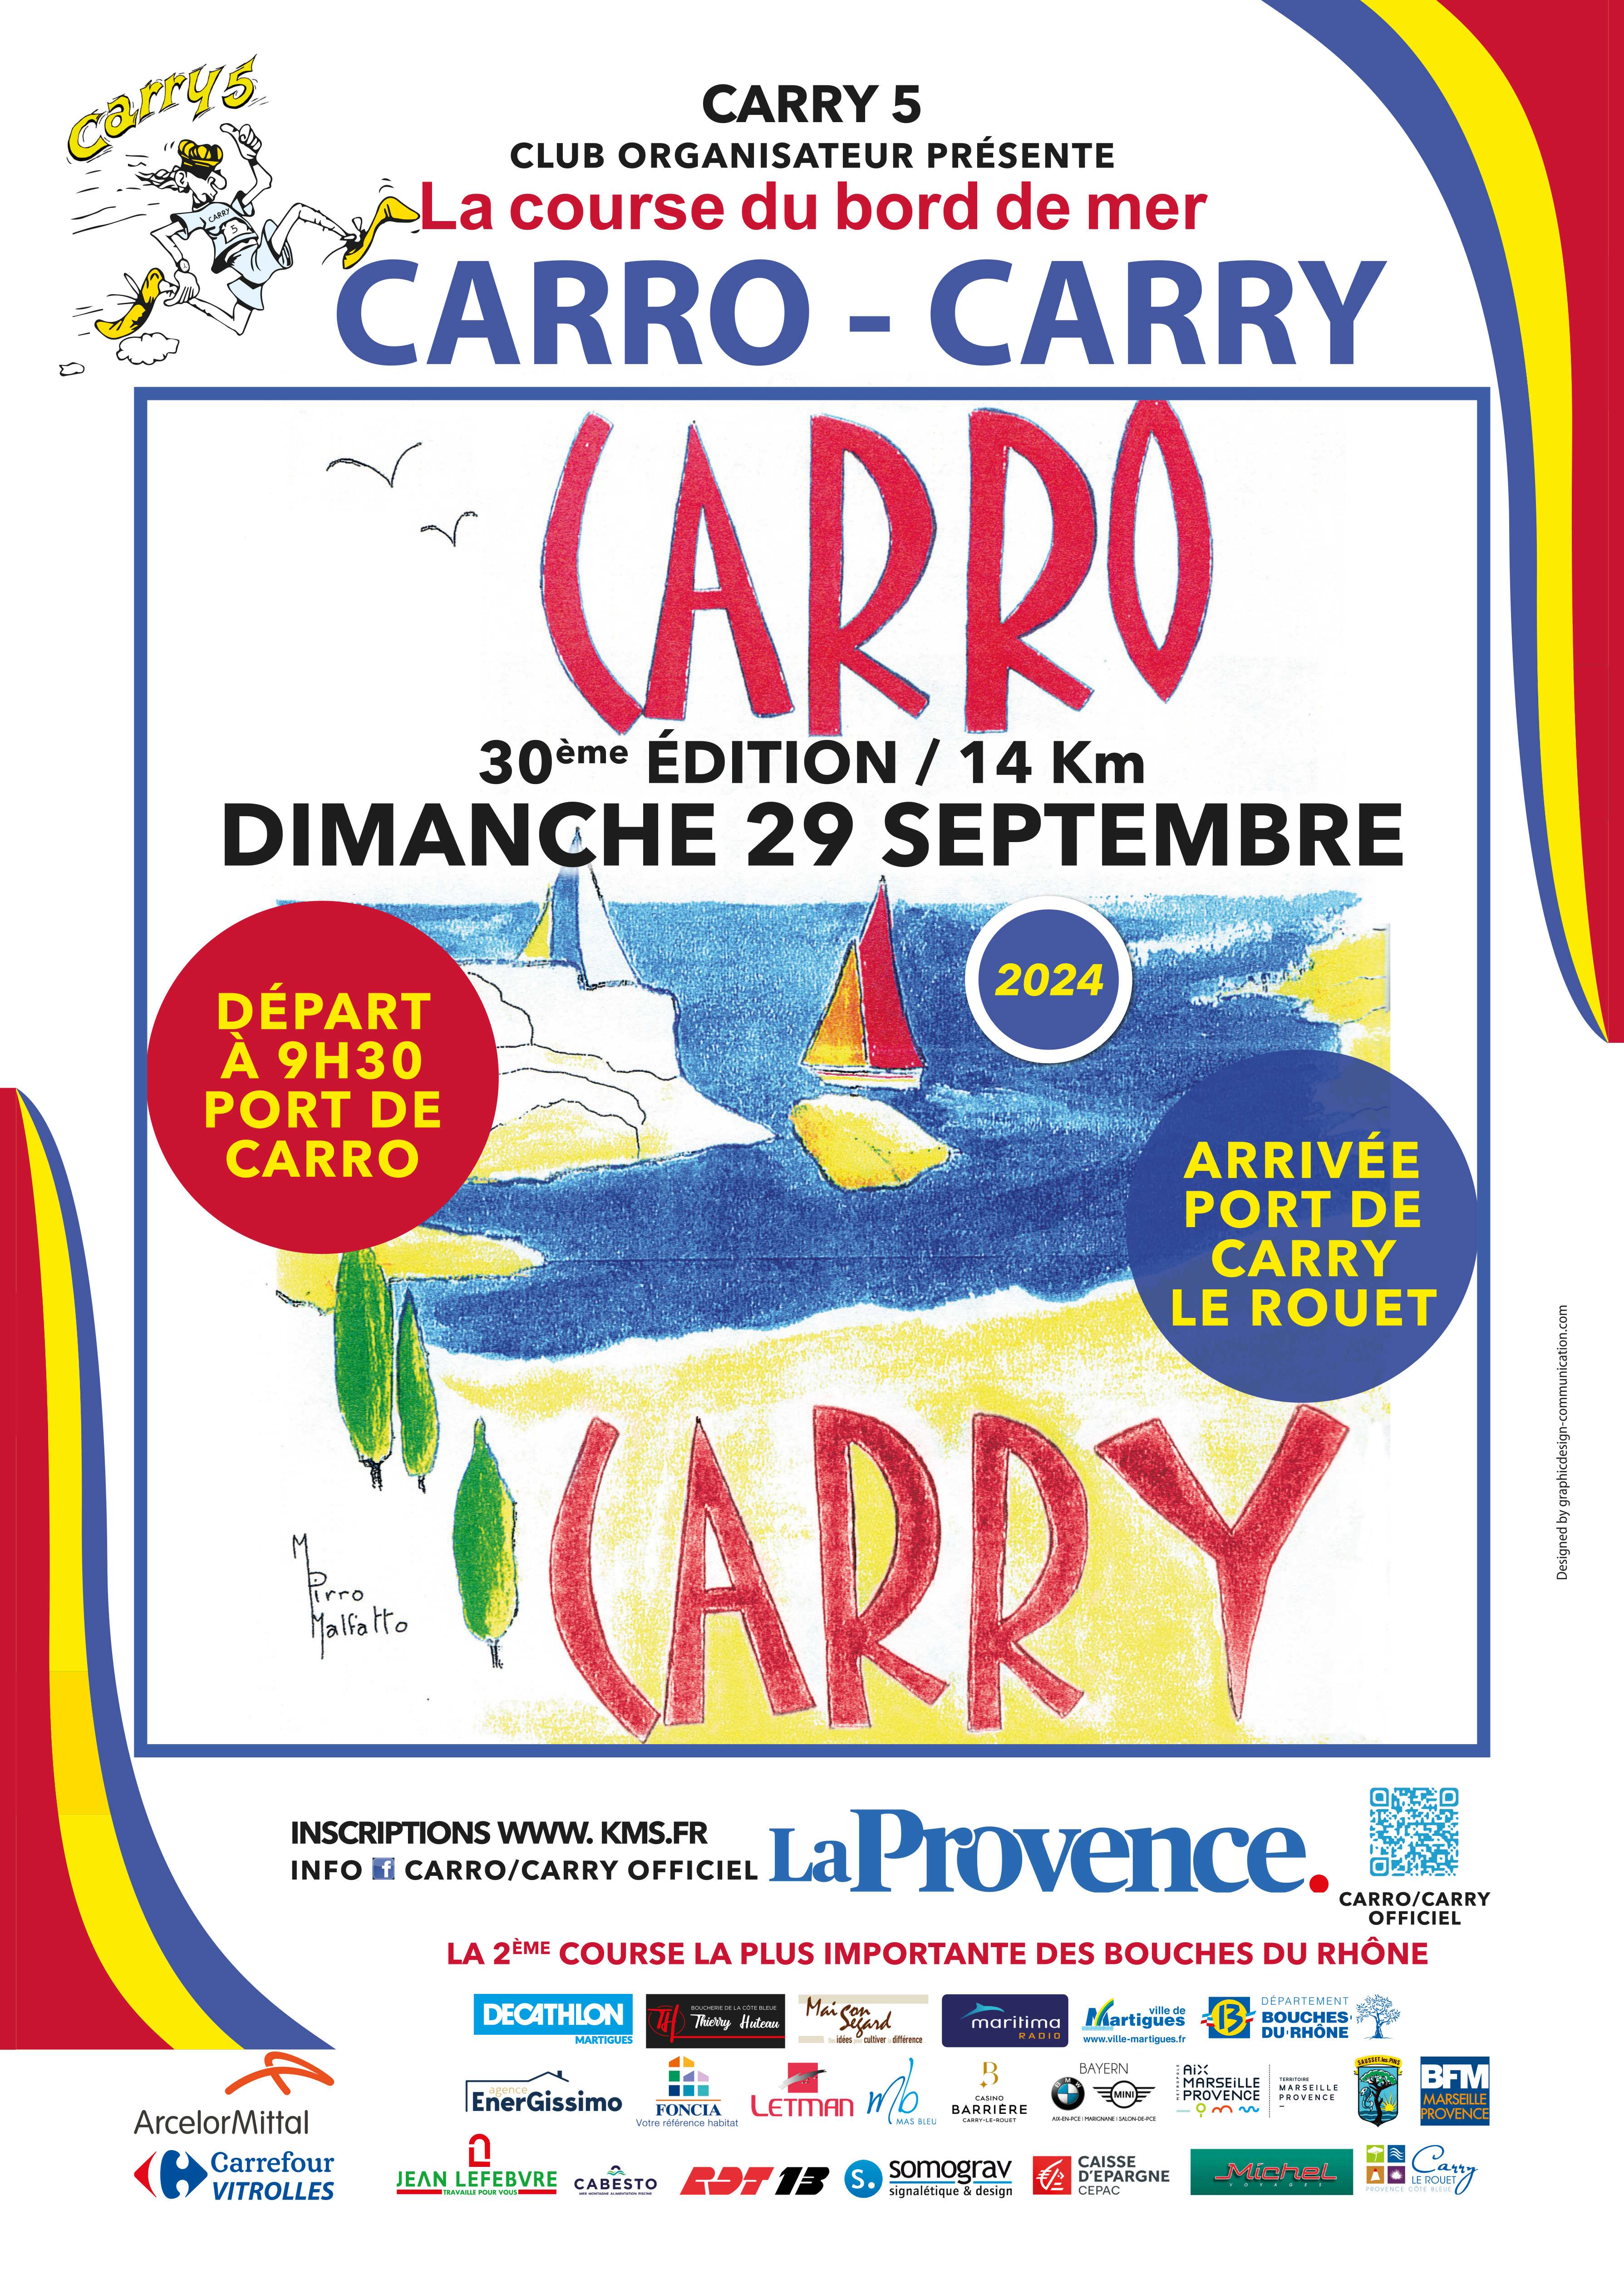 CARRO-CARRY